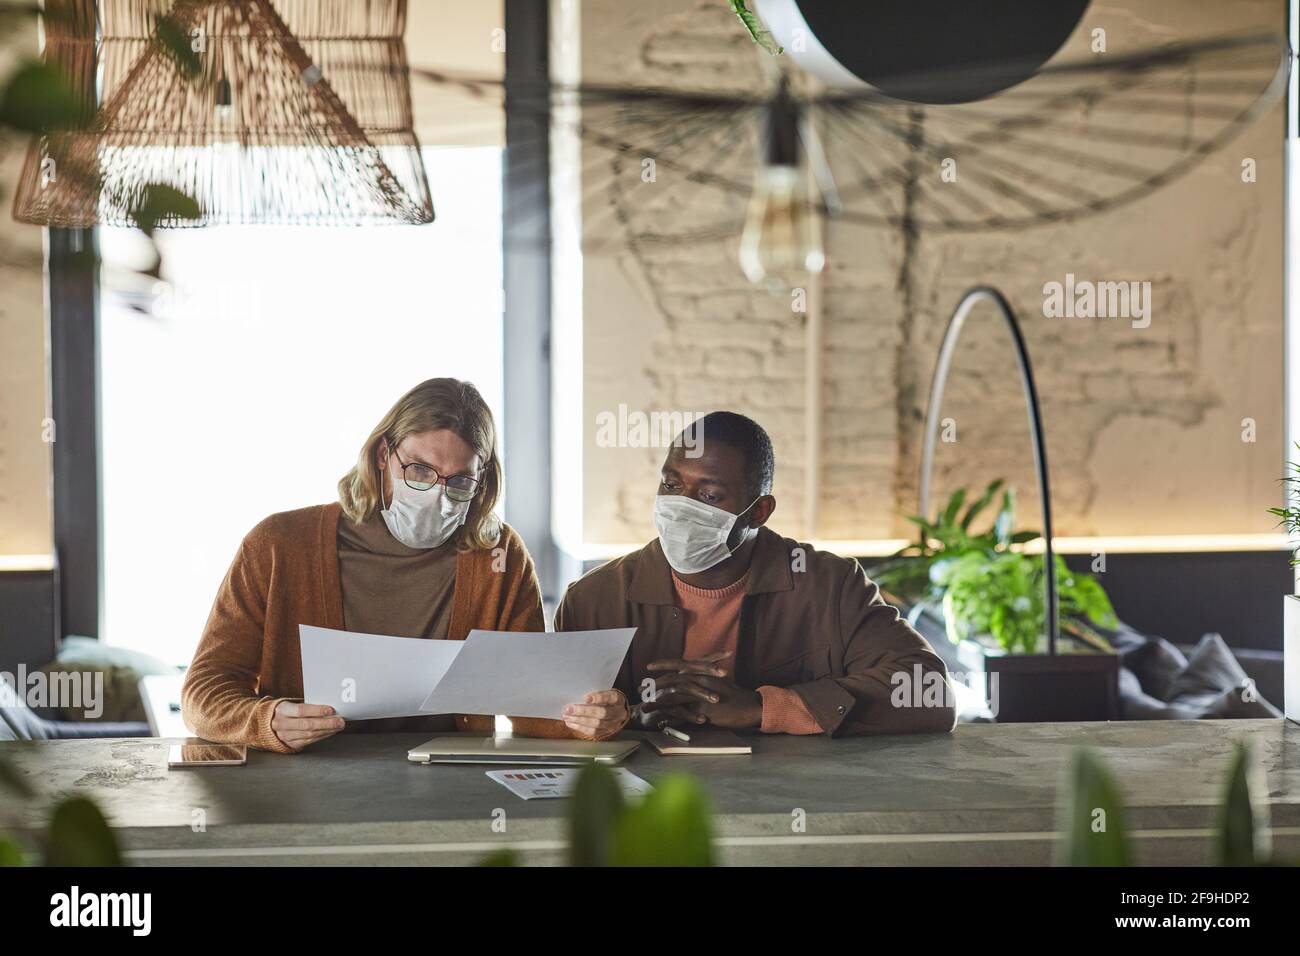 Portrait de face de deux hommes collaborant sur le projet pendant une réunion d'affaires et portant des masques à l'intérieur du bureau ou du café, espace de copie Banque D'Images